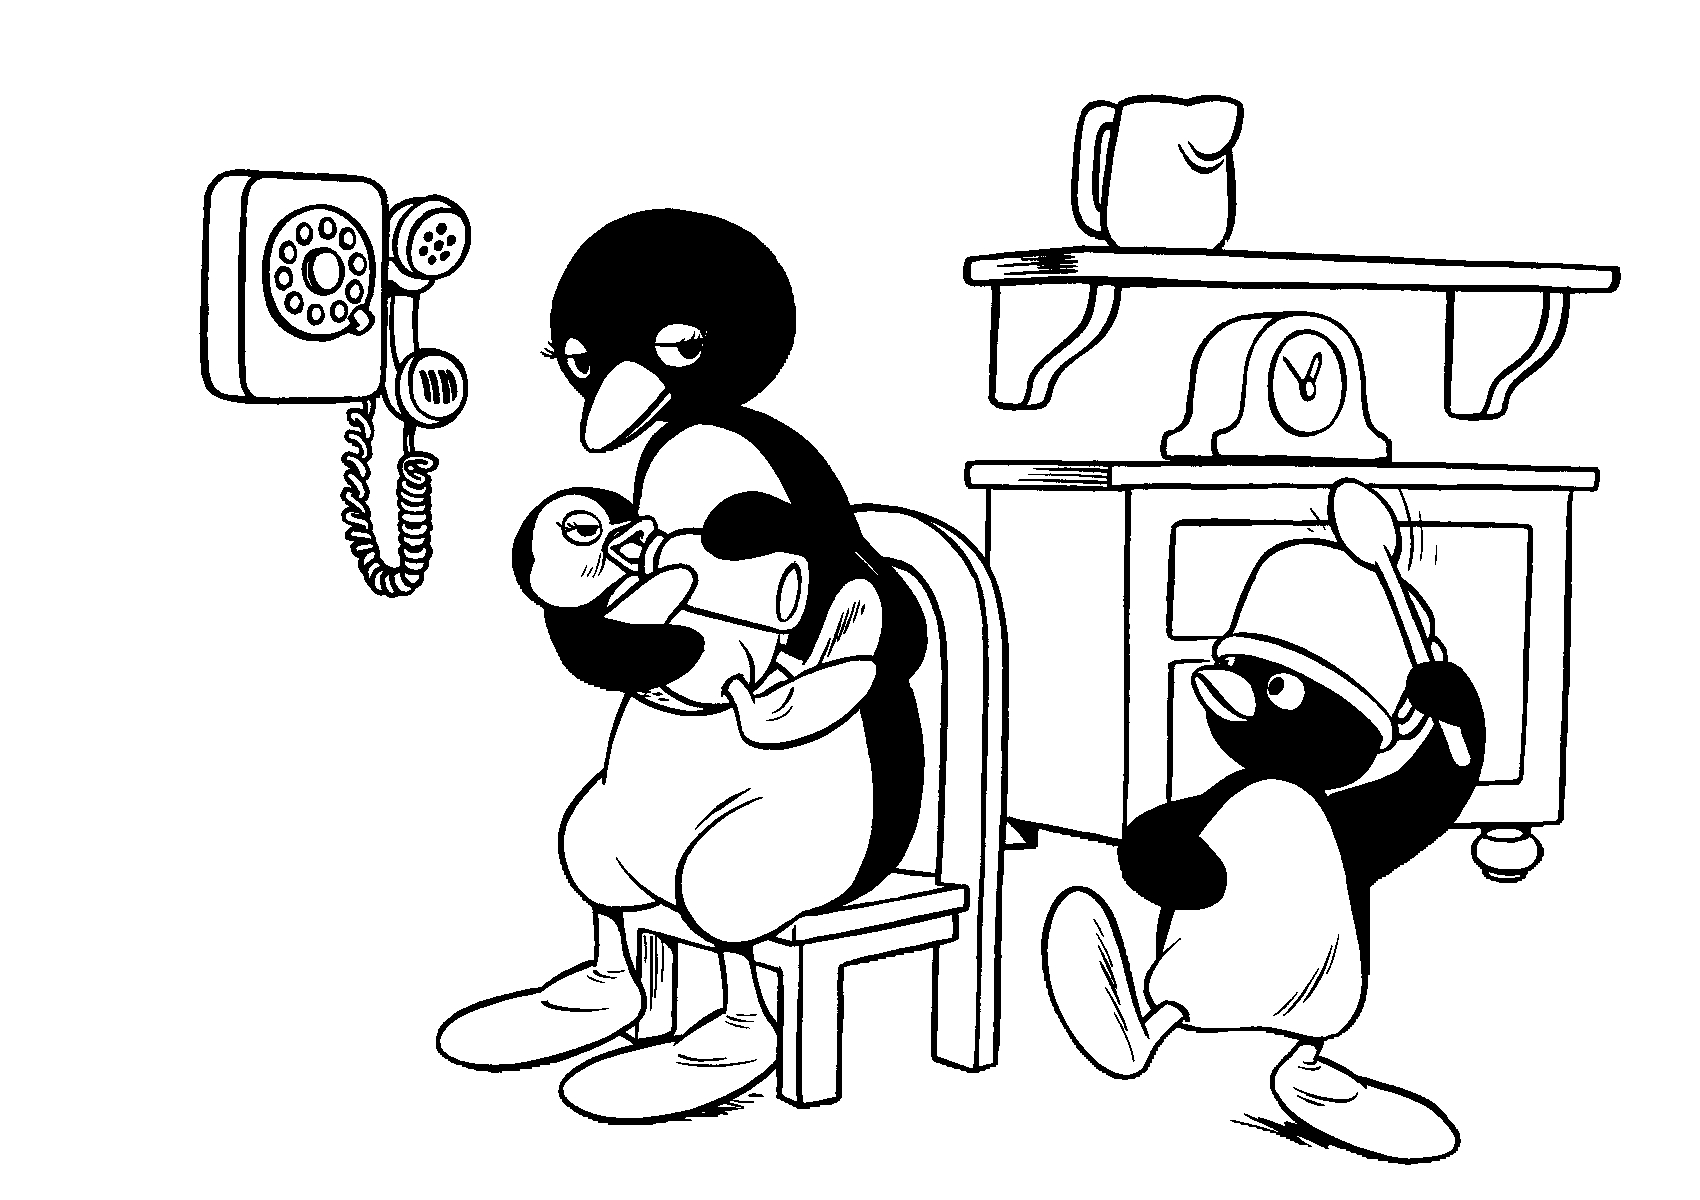 Disegno 7 di Pingu da stampare e colorare